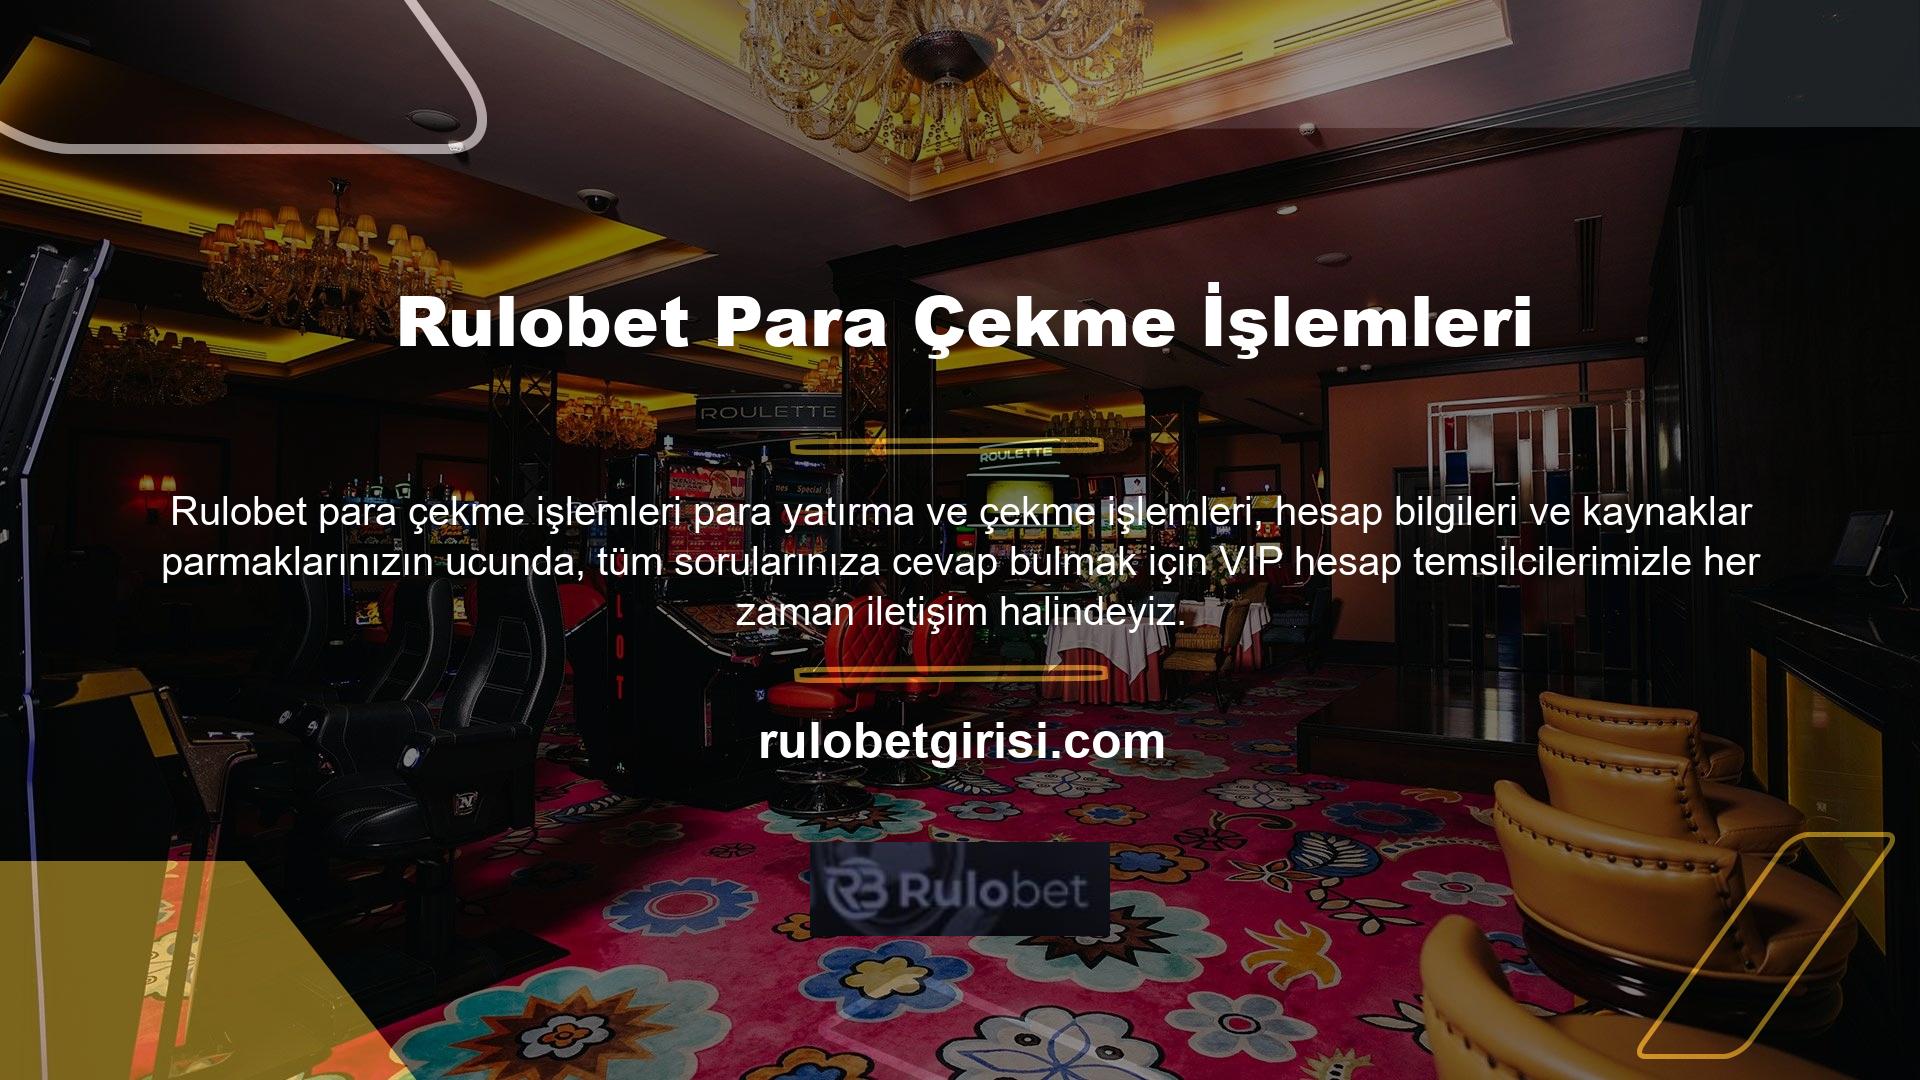 Rulobet sadece spor bahislerinde değil canlı casino, slot ve müşteri ilişkilerinde de kaliteli hizmet vermeye devam ederek güçlü konumunu sürdürmektedir